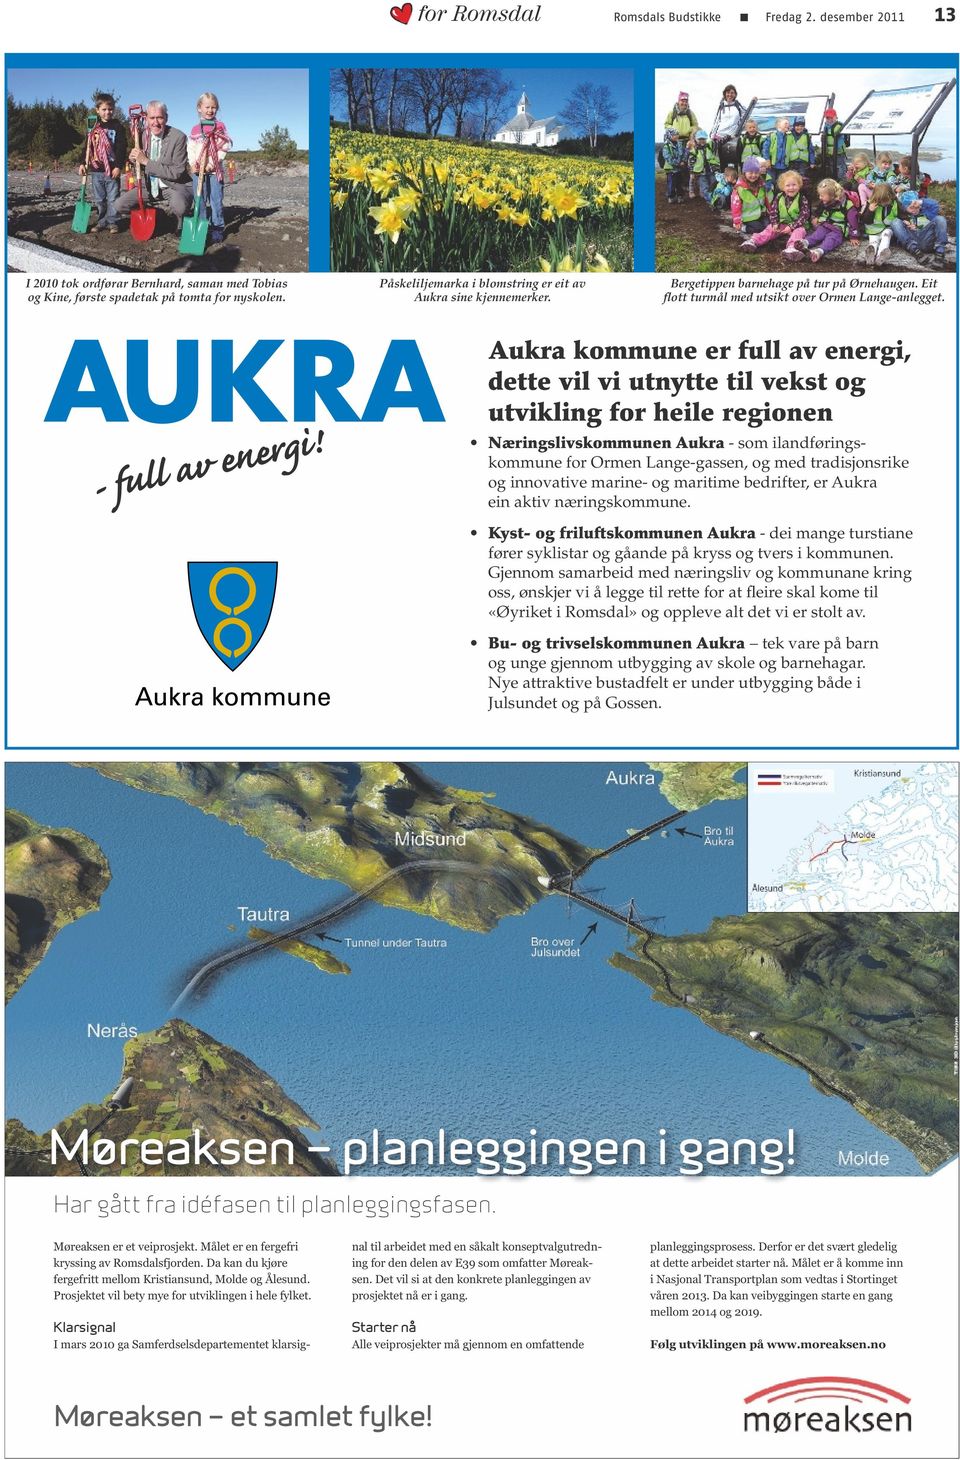 Aukra kommune er full av energi, dette vil vi utnytte til vekst og utvikling for heile regionen Næringslivskommunen Aukra - som ilandføringskommune for Ormen Lange-gassen, og med tradisjonsrike og